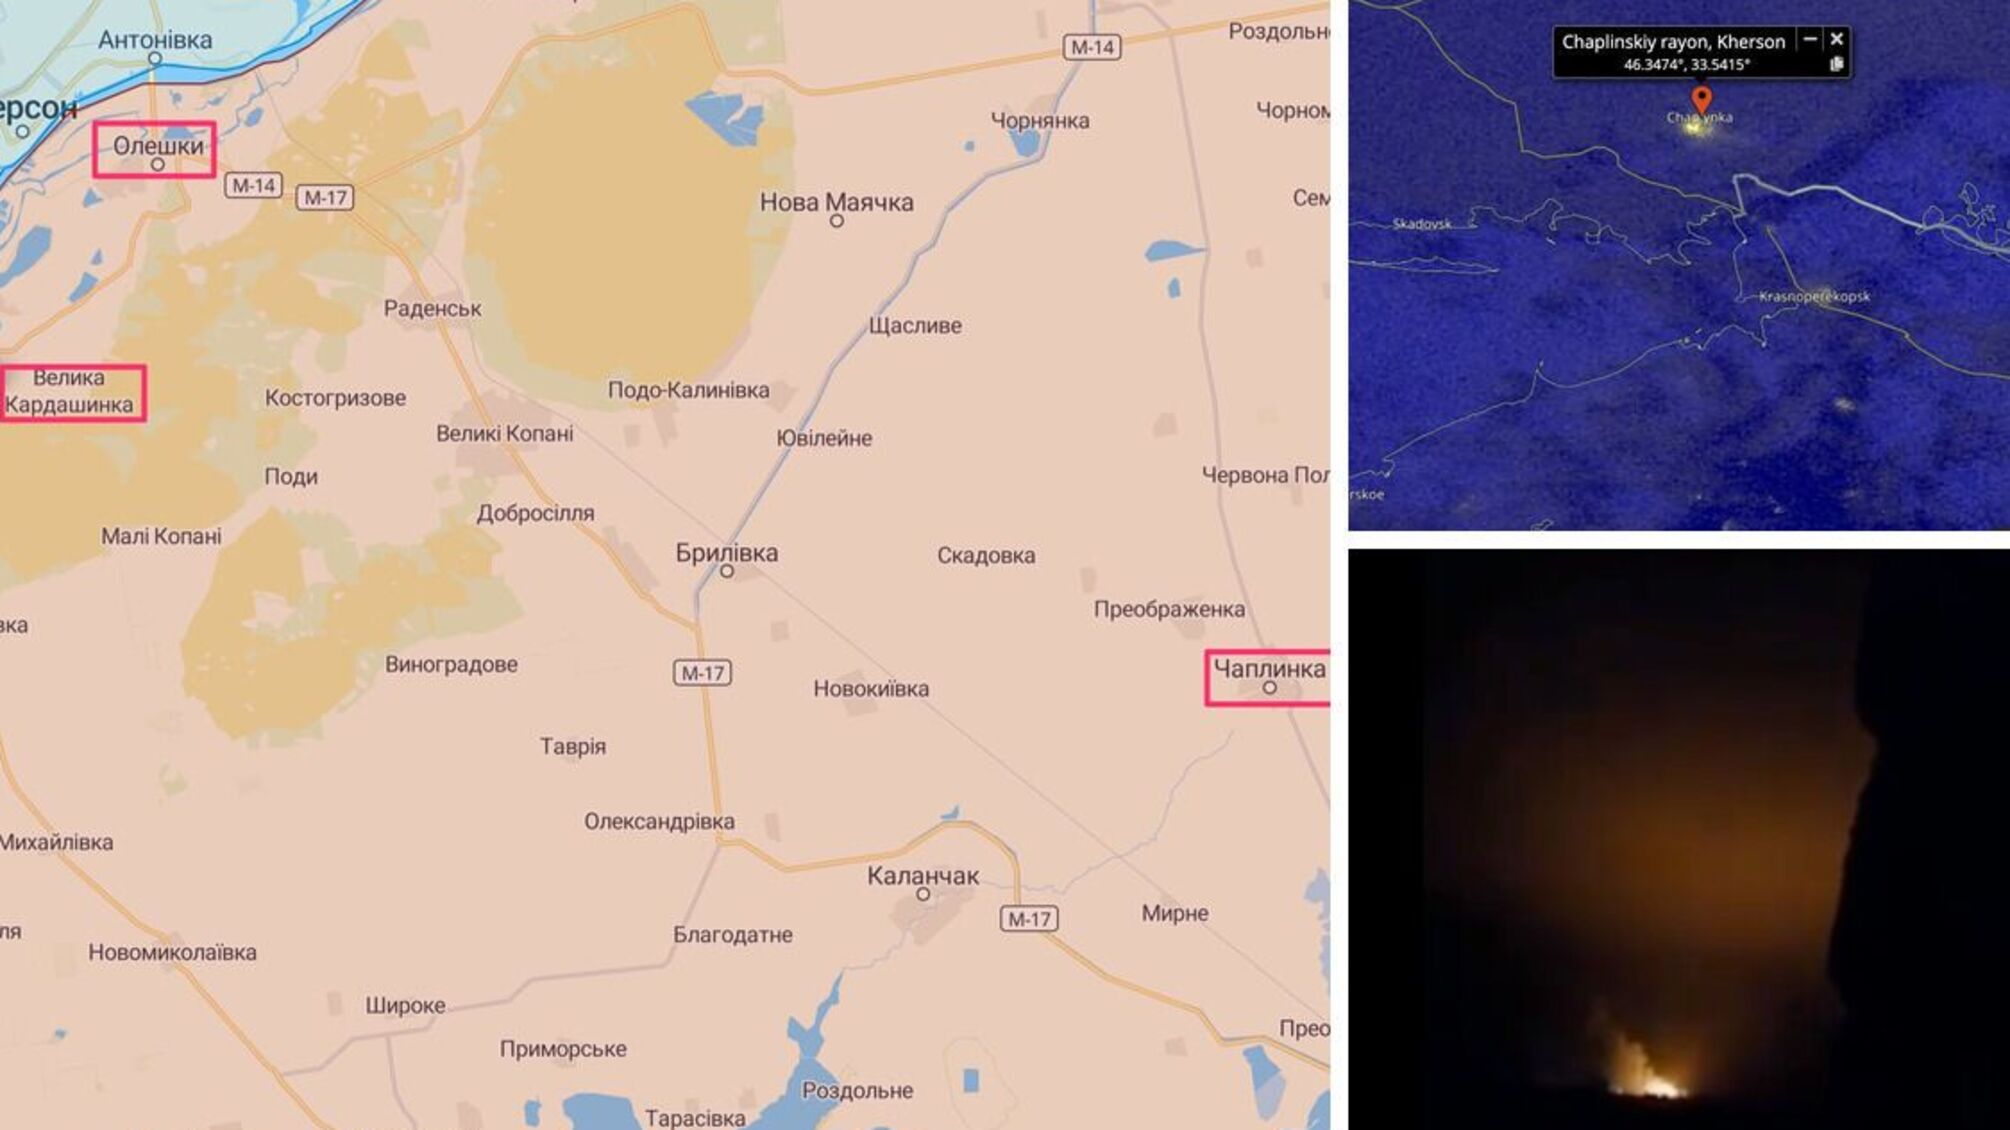 Облачно, местами видна работа HIMARS: новые снимки аэродрома в Чаплынке (фото, видео)